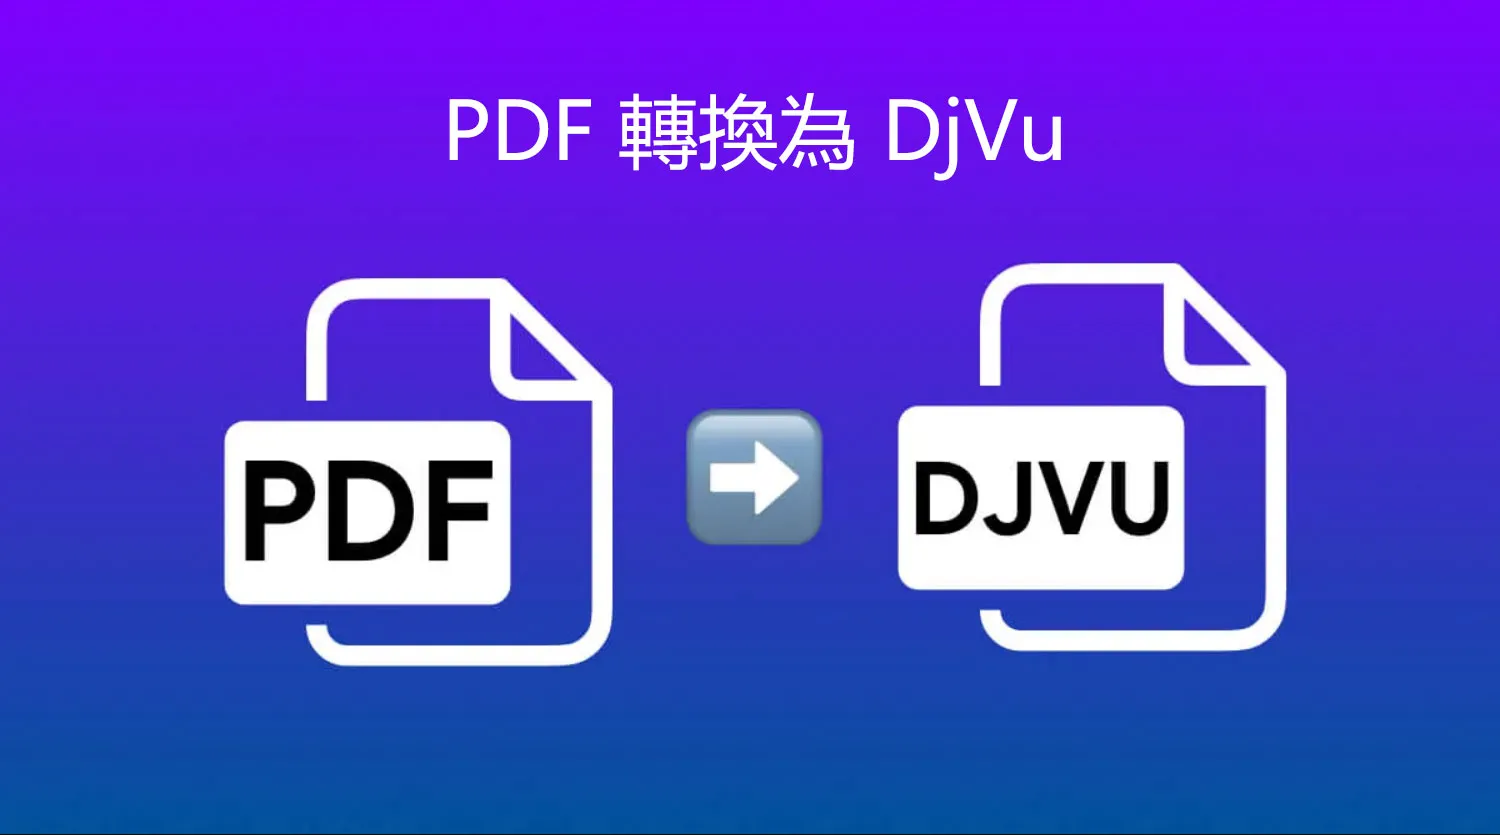 如何將 PDF 轉換為 DjVu 文件？